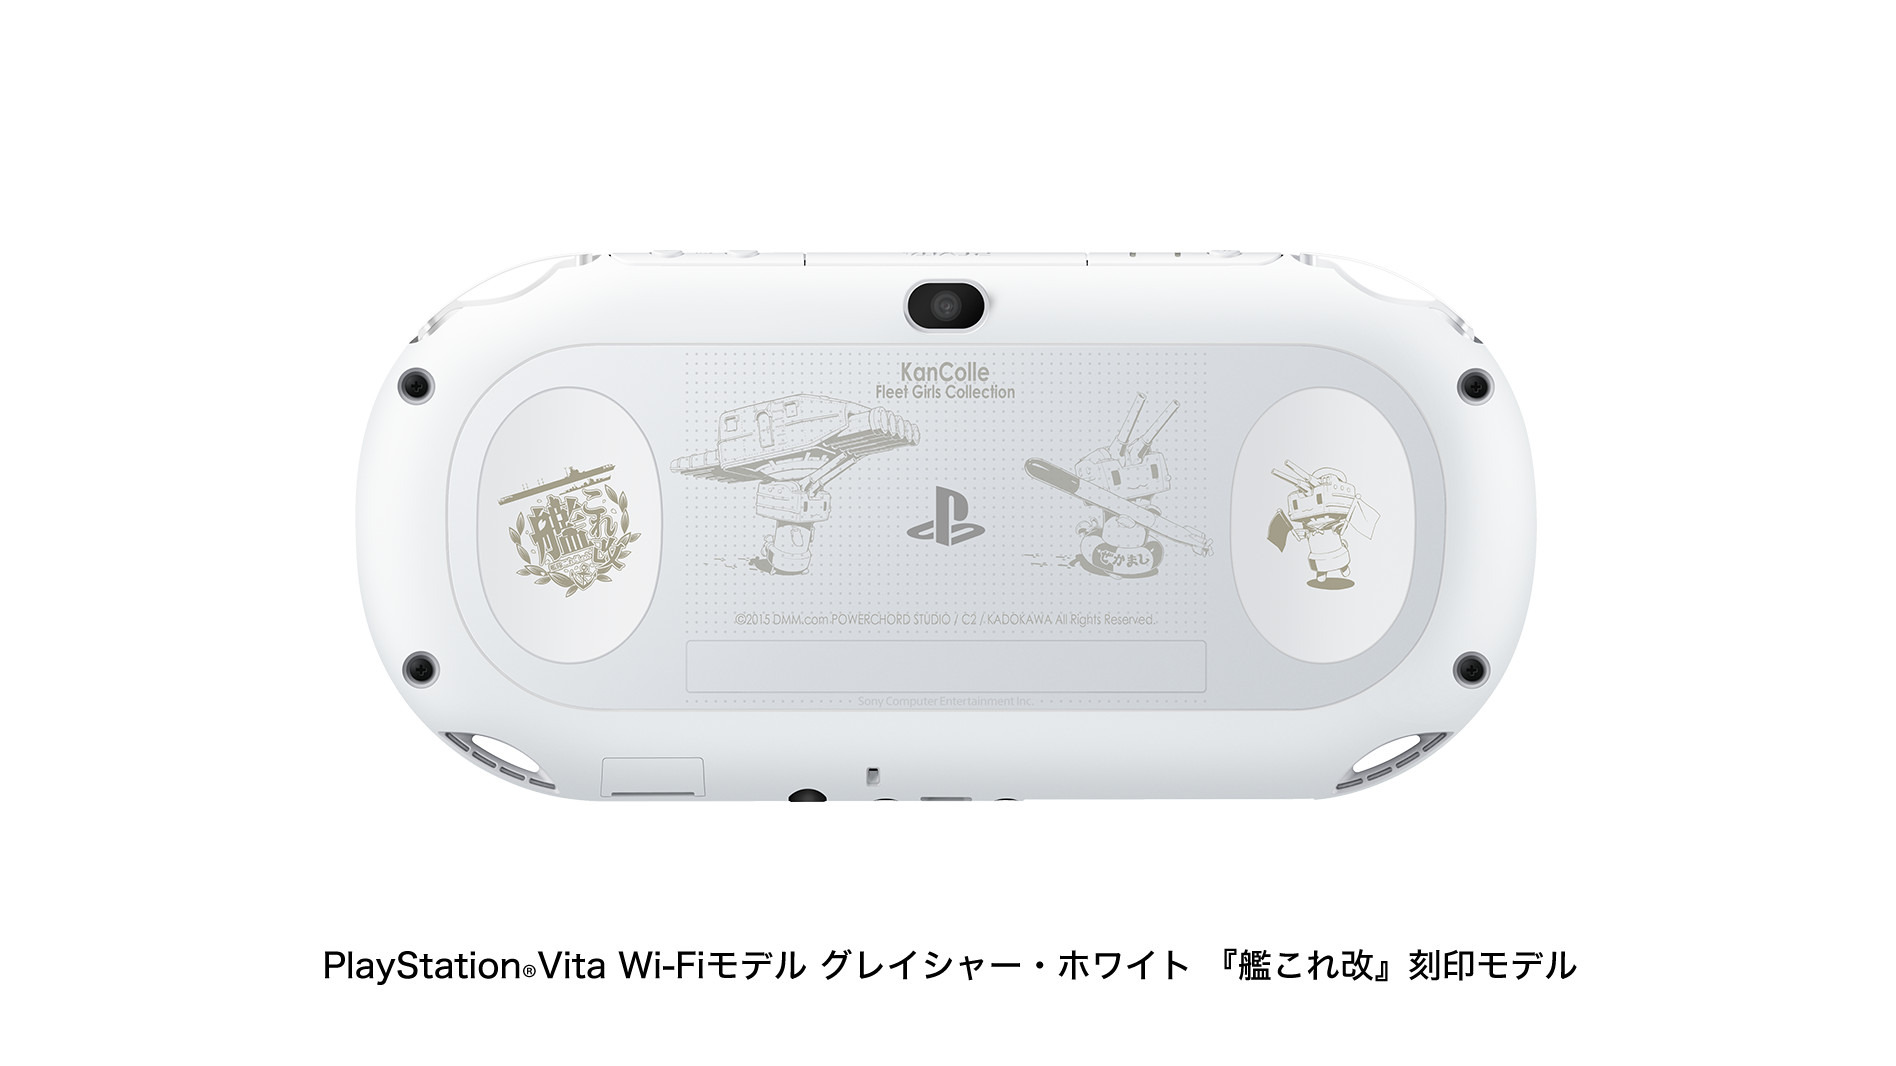 Playstation Vita 艦これ改 Limited Edition Playstation Vita Playstation R ソニー